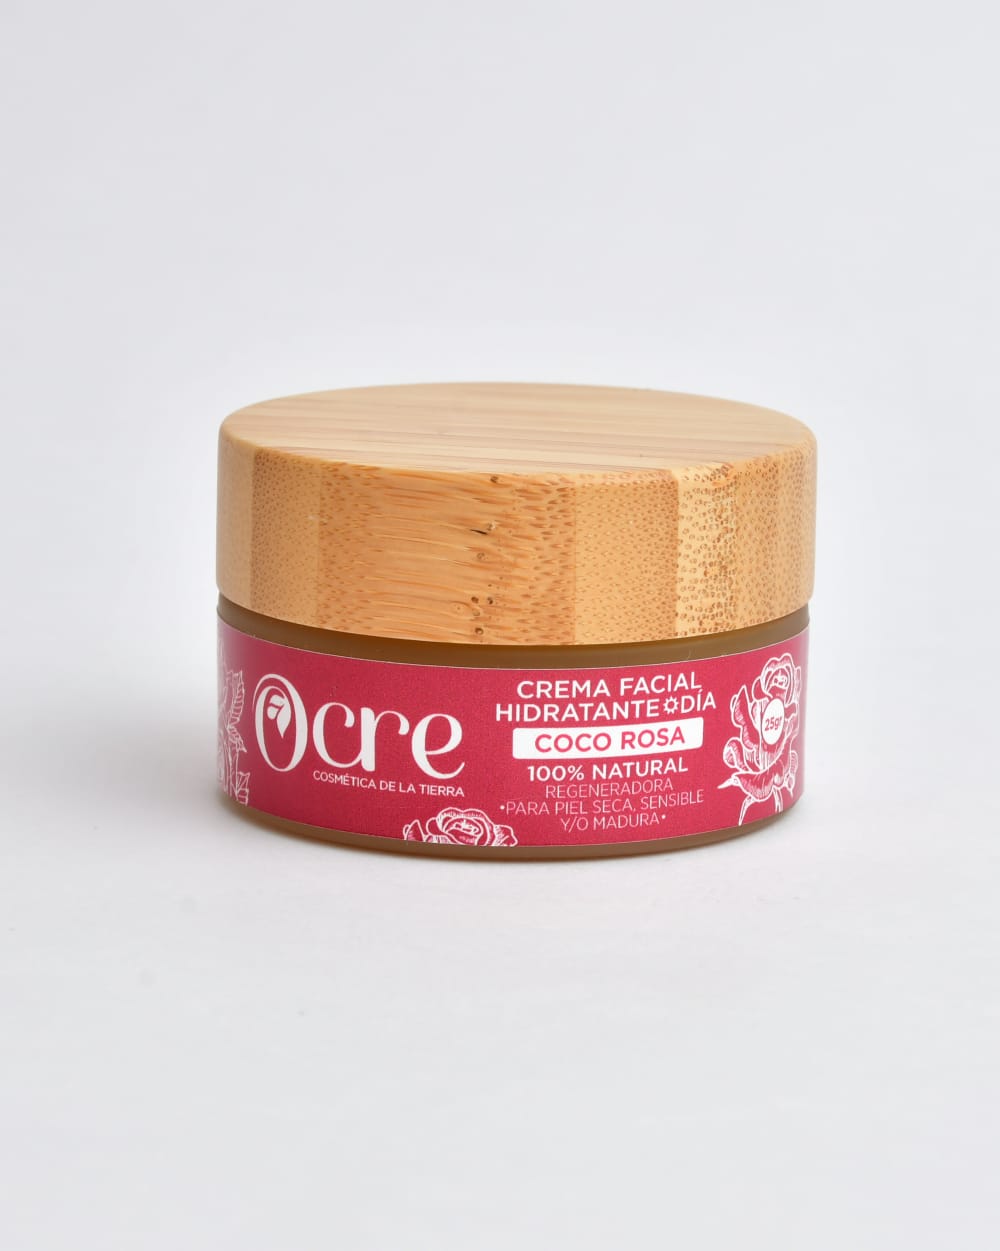 Crema facial coco rosa - La Tortuga y La Liebre